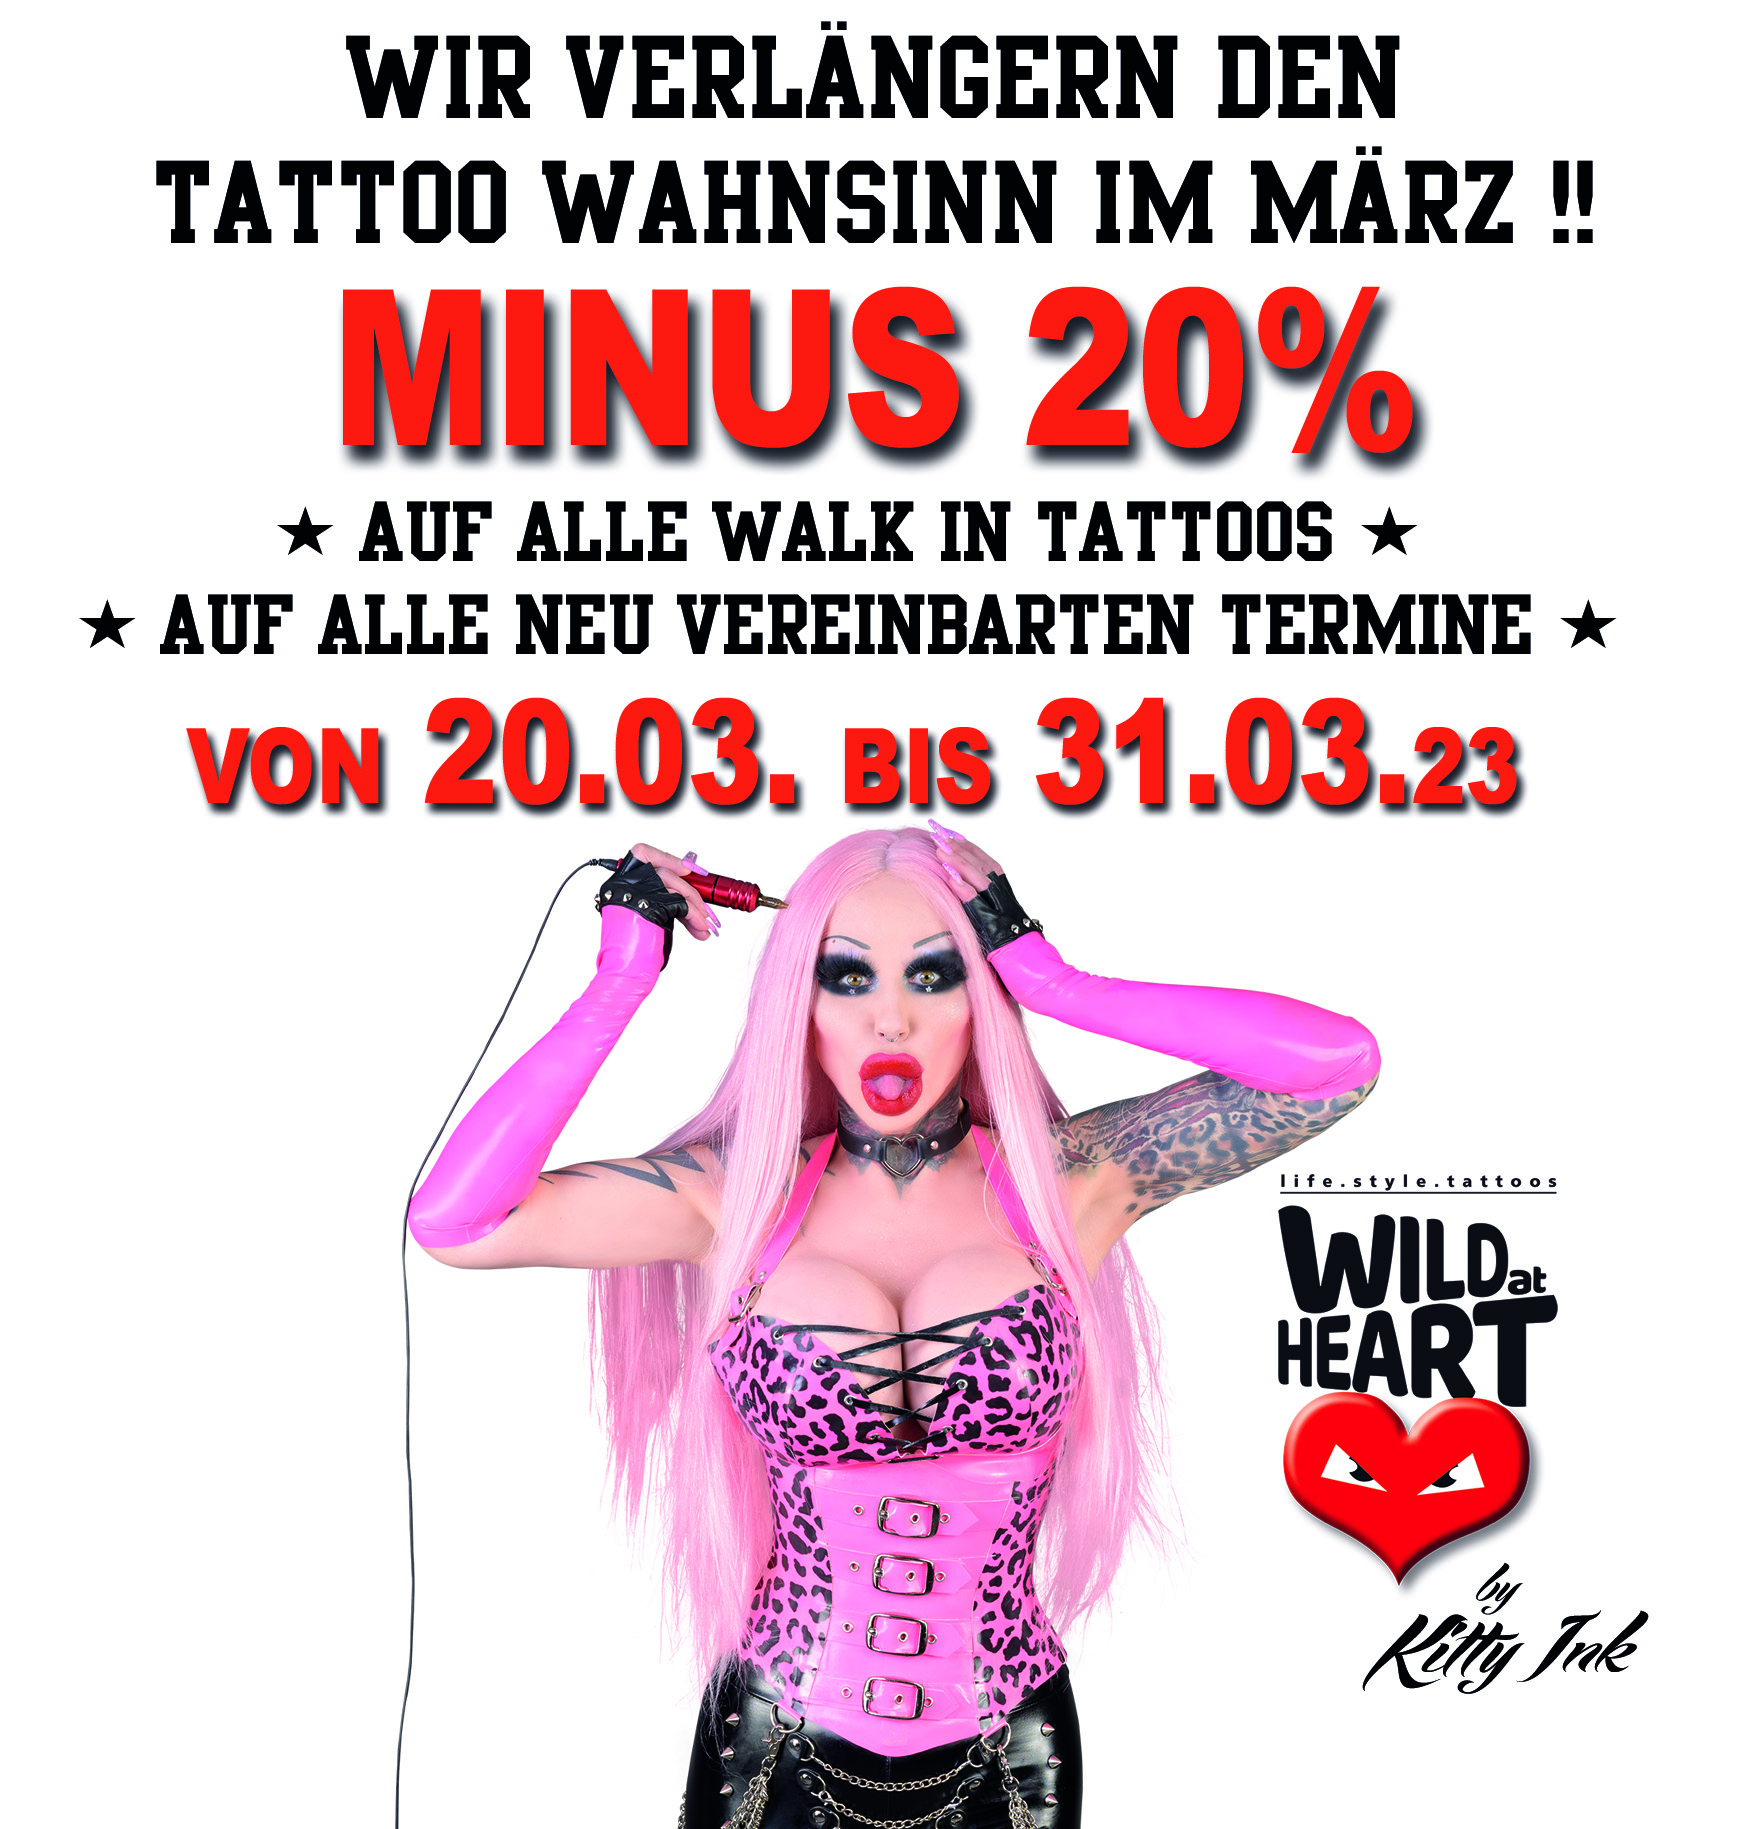 Tattoo Studio Wien